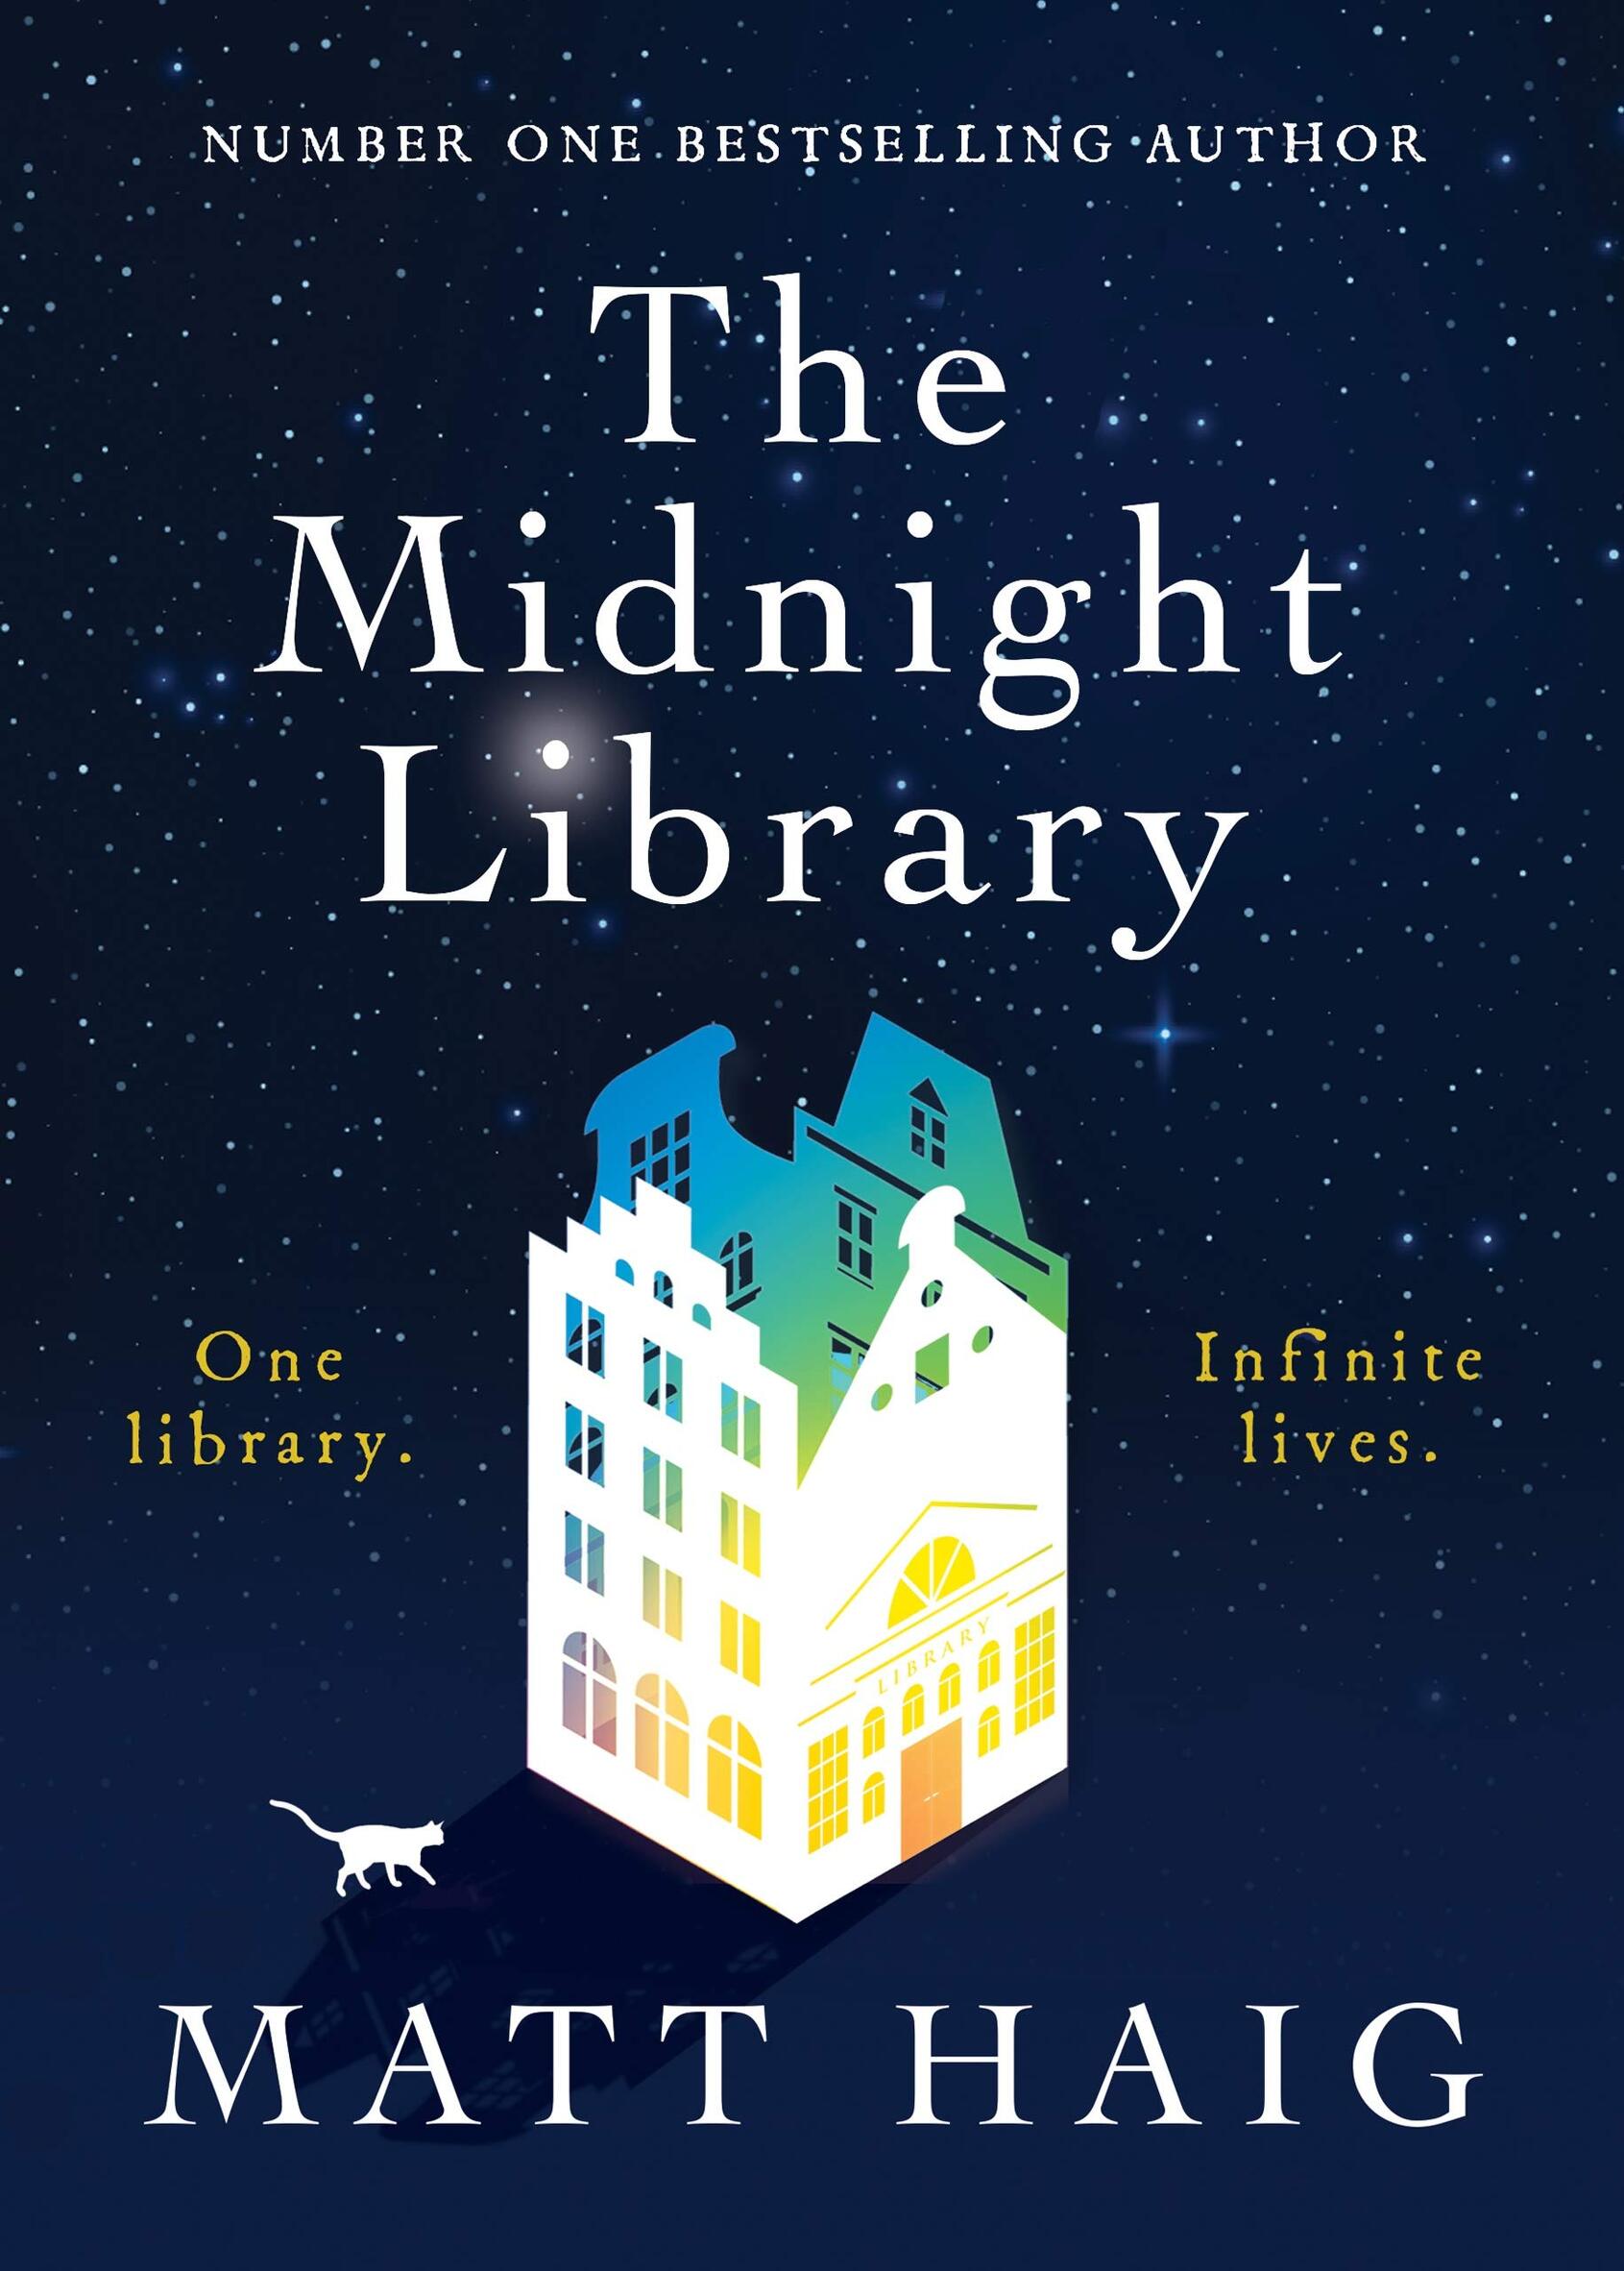 Écoutez La Bibliothèque de Minuit de Matt Haig, sur Youboox 🌙  Imaginez  que les livres de votre bibliothèque vous permettent de refaire votre  vie 📚 Lequel choisiriez-vous ? Une romance ?